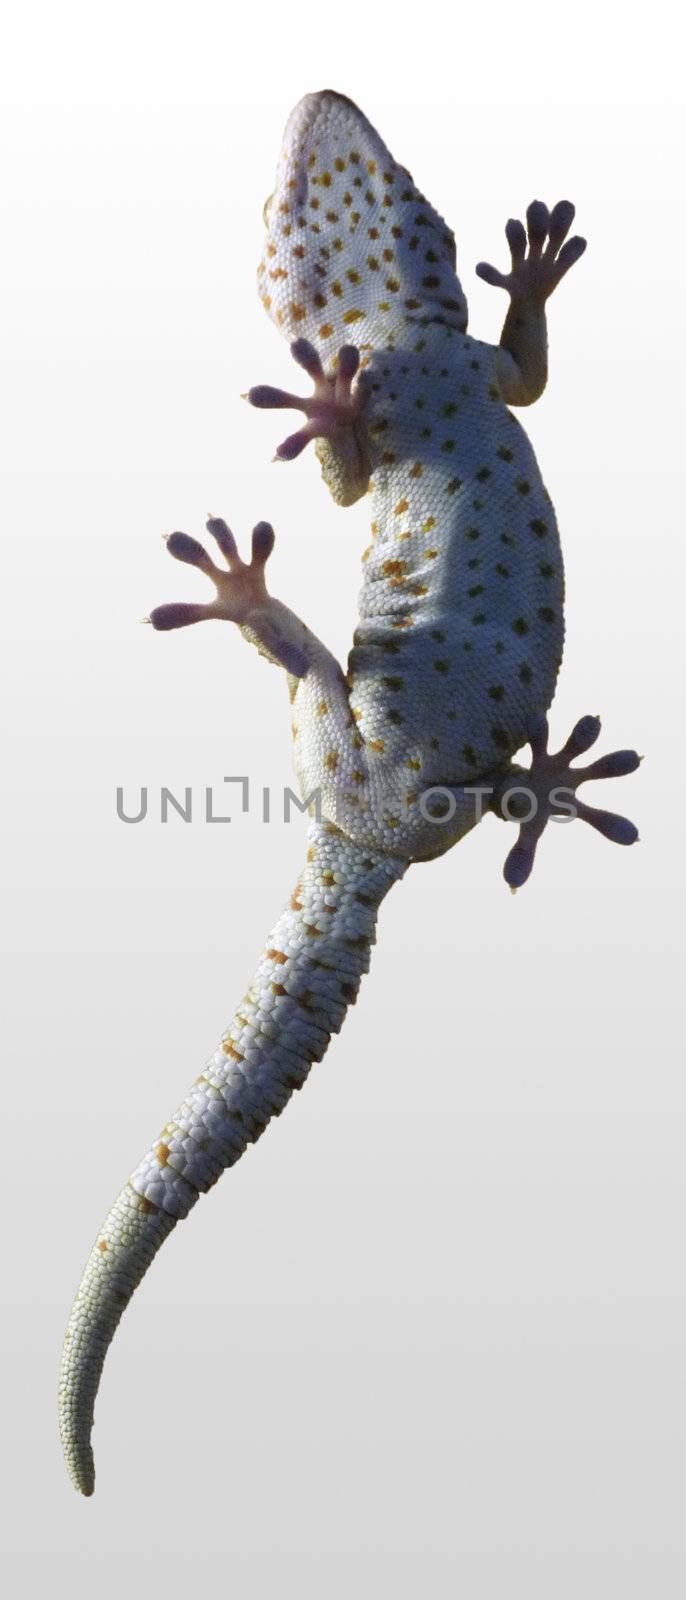 A macro photo of a little lizard